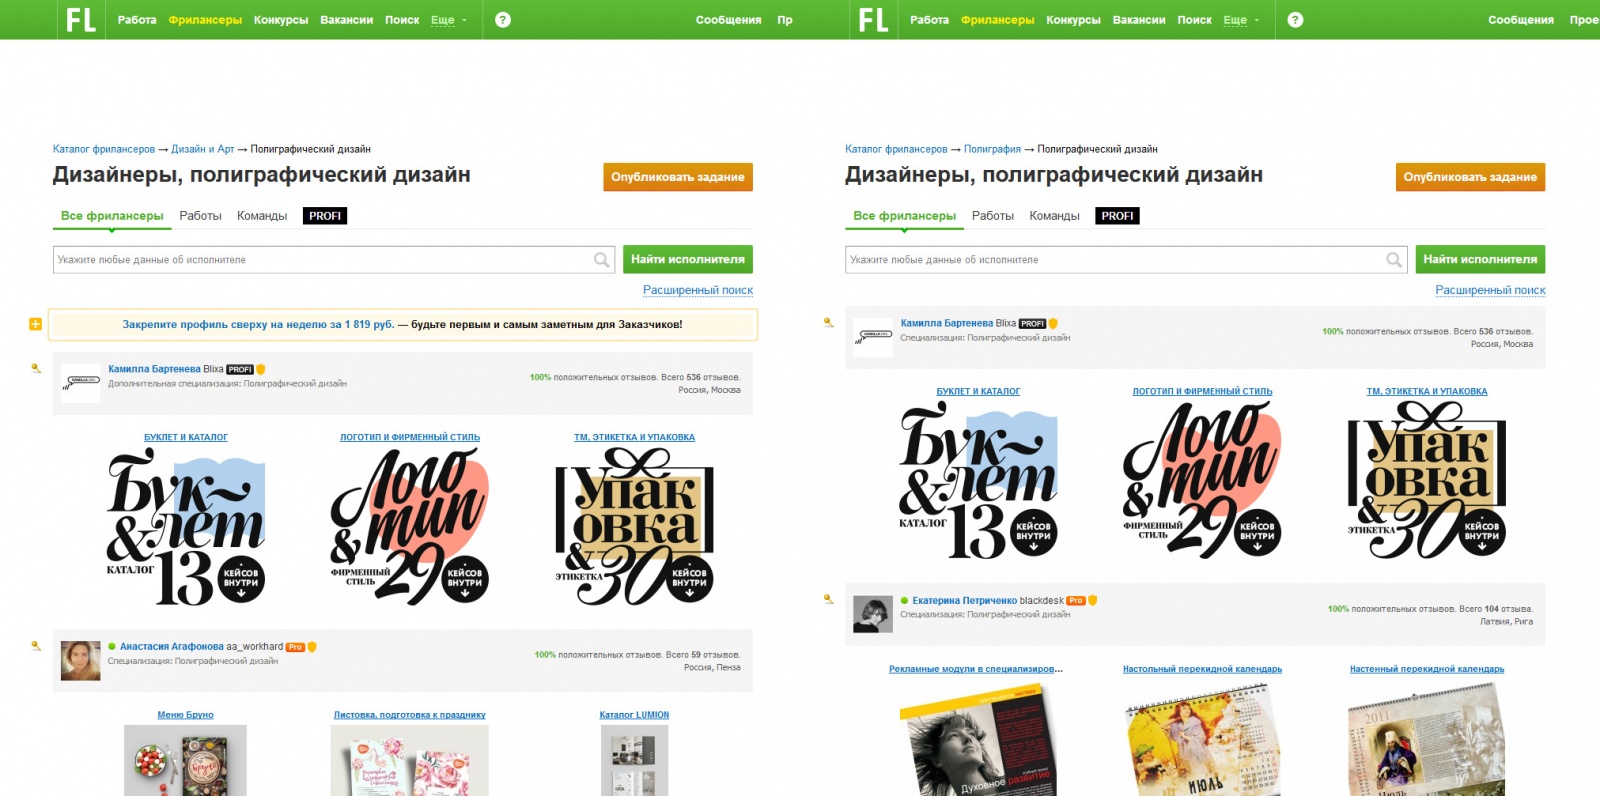 Как FL.ru обманывает пользователей, продавая одну услугу два раза, нарушая собственные правила - 7